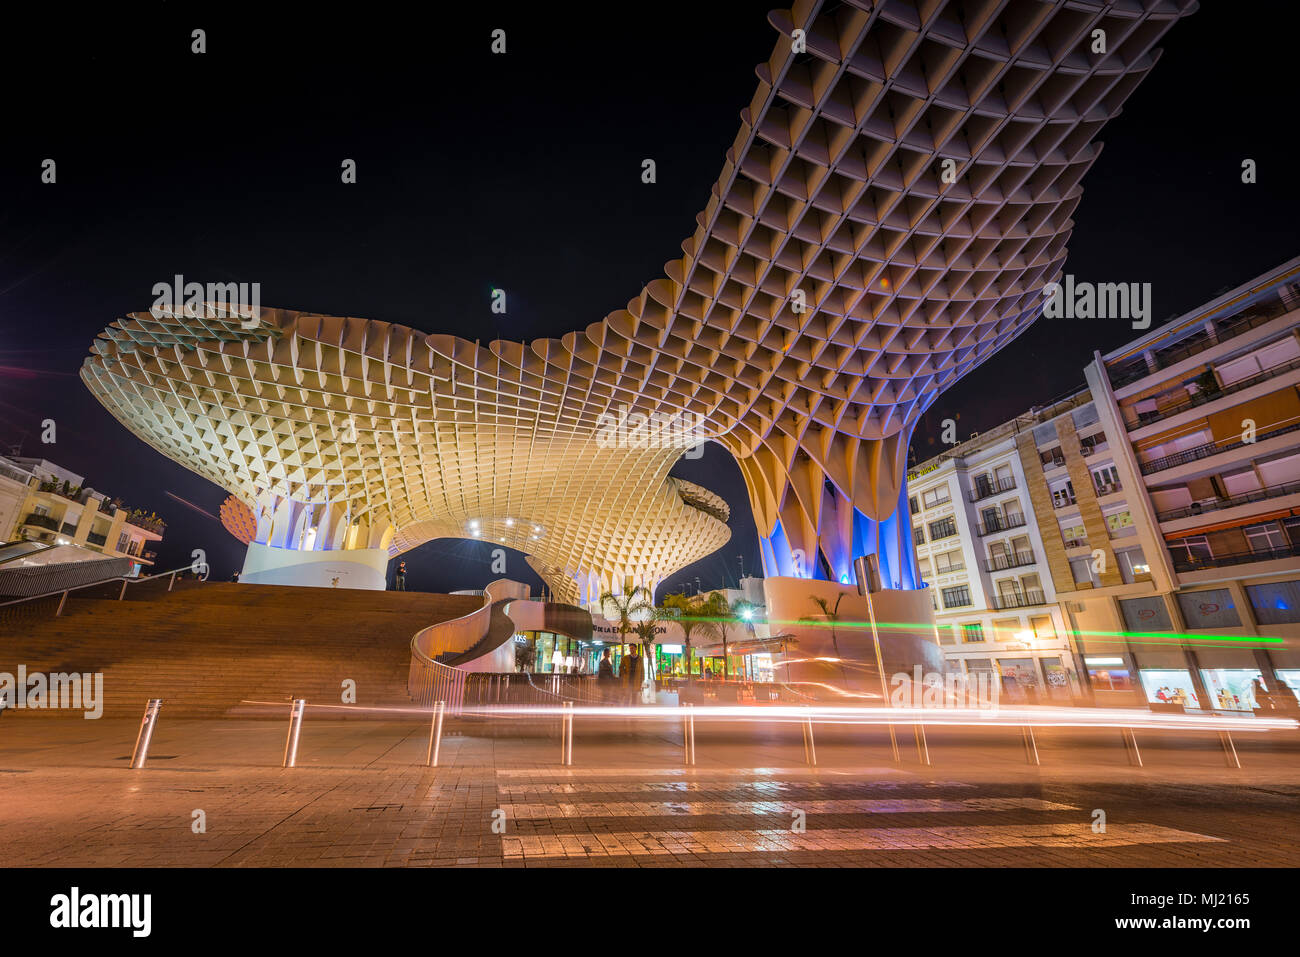 Moderne Architektur, Holz- struktur Metropol Parasol, beleuchtet, mit Spuren von Licht in der Nacht, Plaza de la Encarnacion Stockfoto